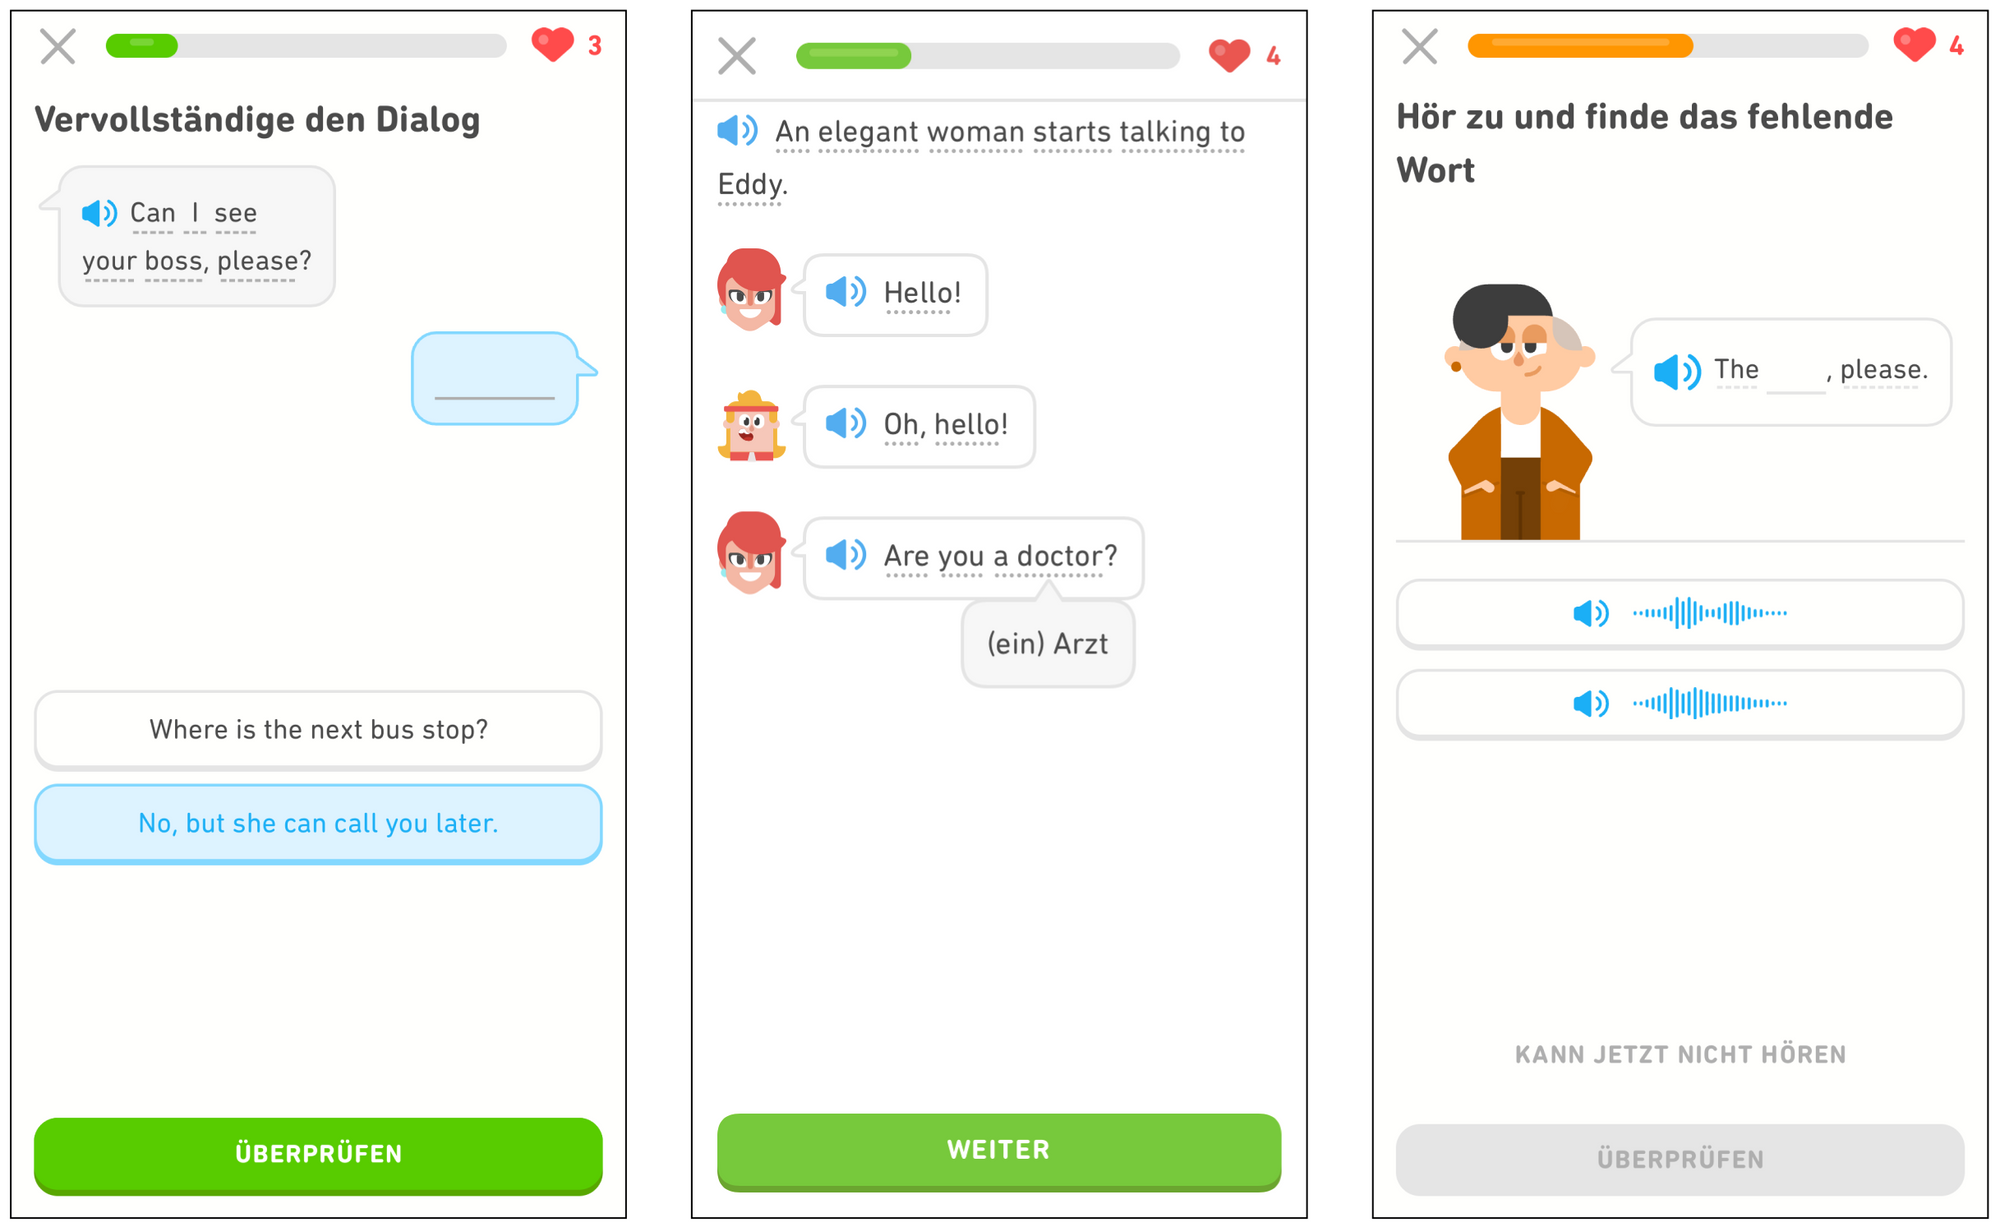 Drei Bildschirmaufnahmen aus der Duolingo-App. Im ersten Bildschirm werden die Lernenden dazu aufgefordert, den Dialog zu vervollständigen, wobei sie die richtige Antwort auf die Frage „Can I see your boss, please?“ aus den beiden angegebenen Antwortmöglichkeiten wählen müssen: „Where is the next bus stop?“ und „No, but she can call you later.“ Ganz unten ist eine grüne Schaltfläche mit dem Text „ÜBERPRÜFEN“. Der zweite Bildschirm zeigt, dass die Lernenden unbekannte Wörter antippen können, um deren Übersetzung zu sehen. Der erste Satz lautet: „An elegant woman starts talking to Eddy.“ Der Lerner sieht anschließend Bilder von einer Frau und Eddy mit Sprechblasen, die er antippen kann, um den Dialog zu hören. Der Dialog beginnt mit der Frau („Hello!“), gefolgt von Eddy („Oh, hello!“) und zeigt schließlich eine Frage der Frau („Are you a doctor?“). Unter dem Wort “doctor” wird ein Pop-up angezeigt, das mit „(ein) Arzt“ übersetzt wird. Ganz unten ist eine grüne Schaltfläche mit dem Text „WEITER“. Der letzte Bildschirm fordert die Lernenden auf, zuzuhören und das fehlende Wort zu finden. Die Lernenden sehen Lin mit einer Sprechblase, in der „The … , please“ steht. Diese können sie antippen, um Lin sprechen zu hören. Anschließend werden den Lernenden zwei Audiodateien angezeigt, die sie sich anhören und von denen sie eine auswählen müssen. Unten ist mittig ein Link „KANN JETZT NICHT HÖREN“ und darunter eine graue Schaltfläche mit dem Text „ÜBERPRÜFEN“.